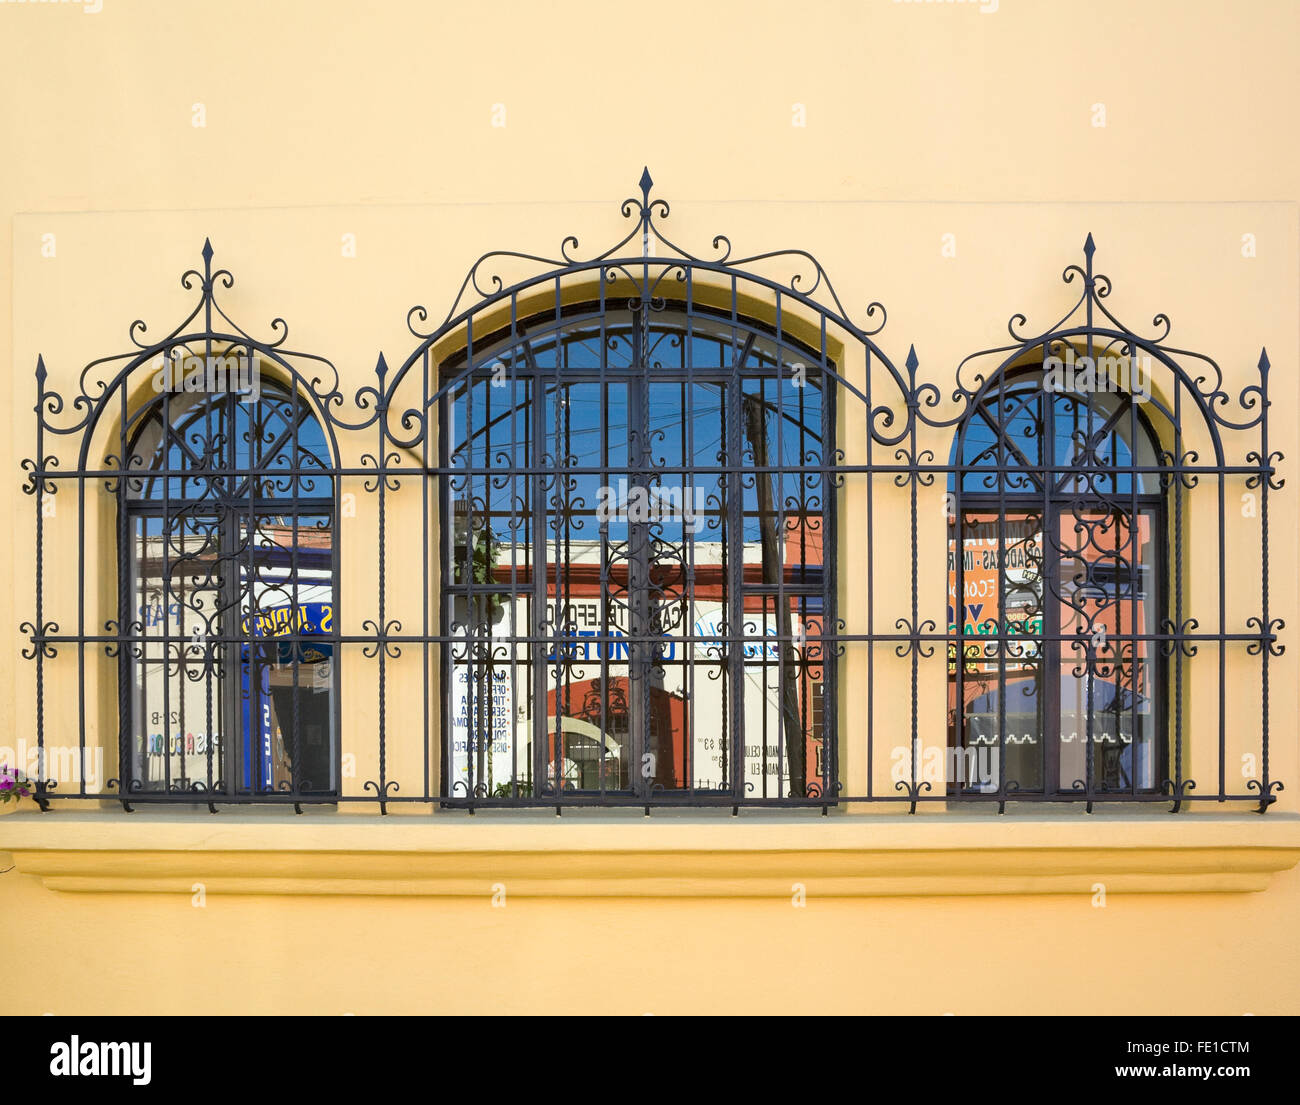 Escena callejera se refleja en ventanas arqueadas con rejas de hierro  forjado adornadas, la ciudad de Oaxaca, Oaxaca, México. Detalles de la  arquitectura colonial española Fotografía de stock - Alamy